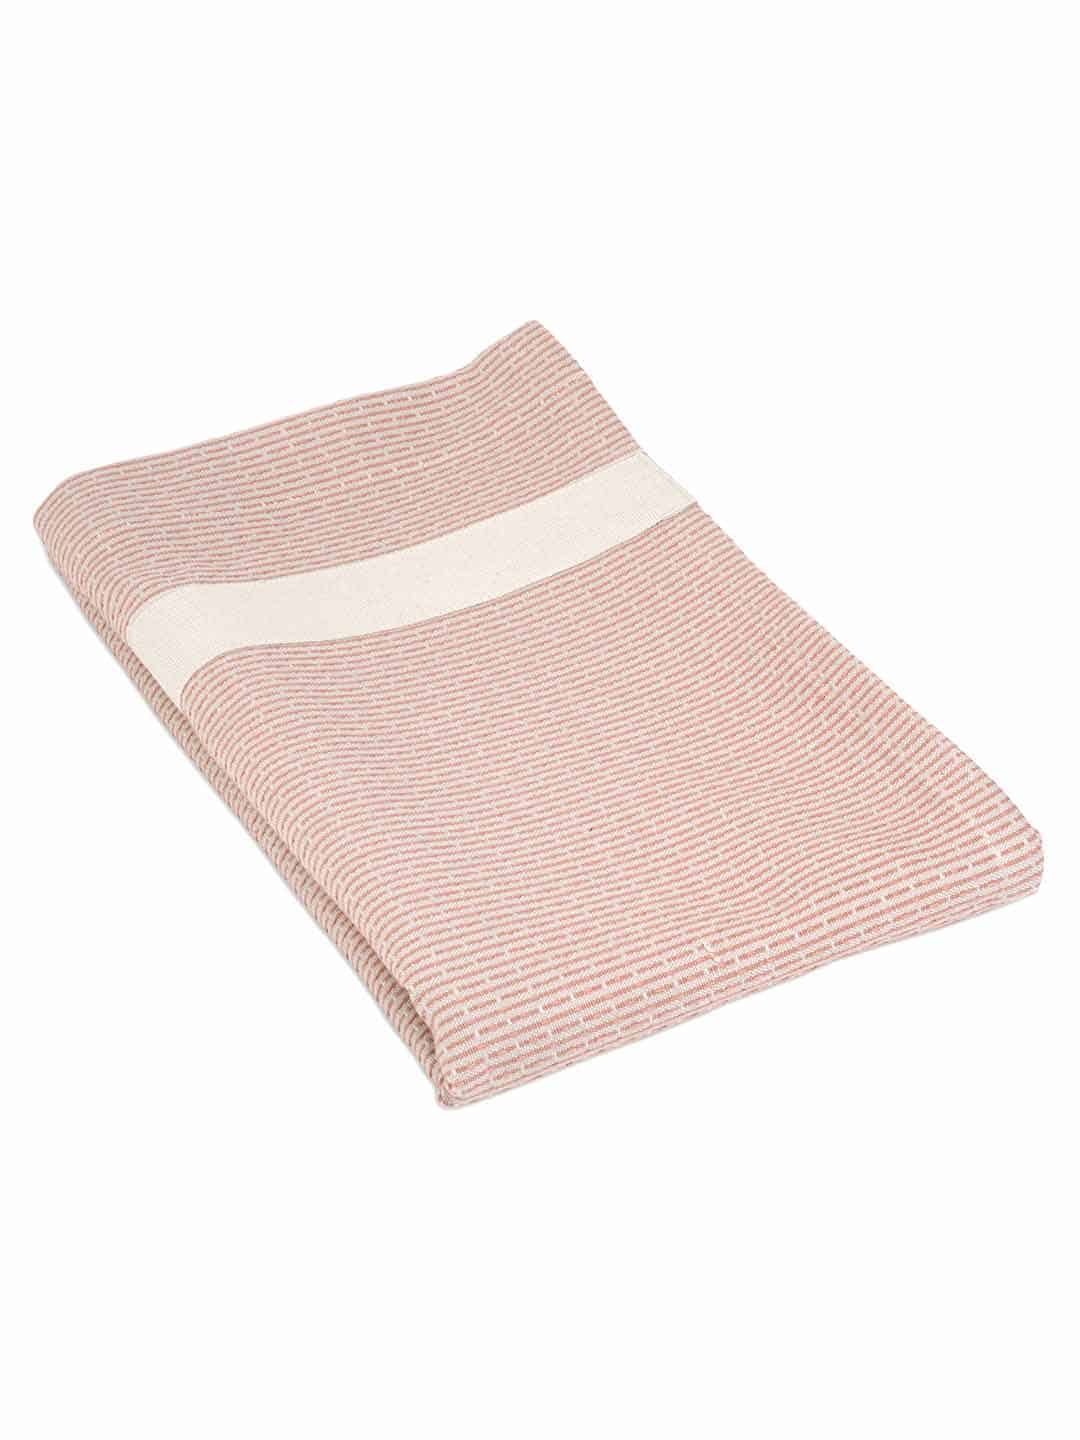 Скандинавское полотенце для тела с поясом, 155х60см розового цвета